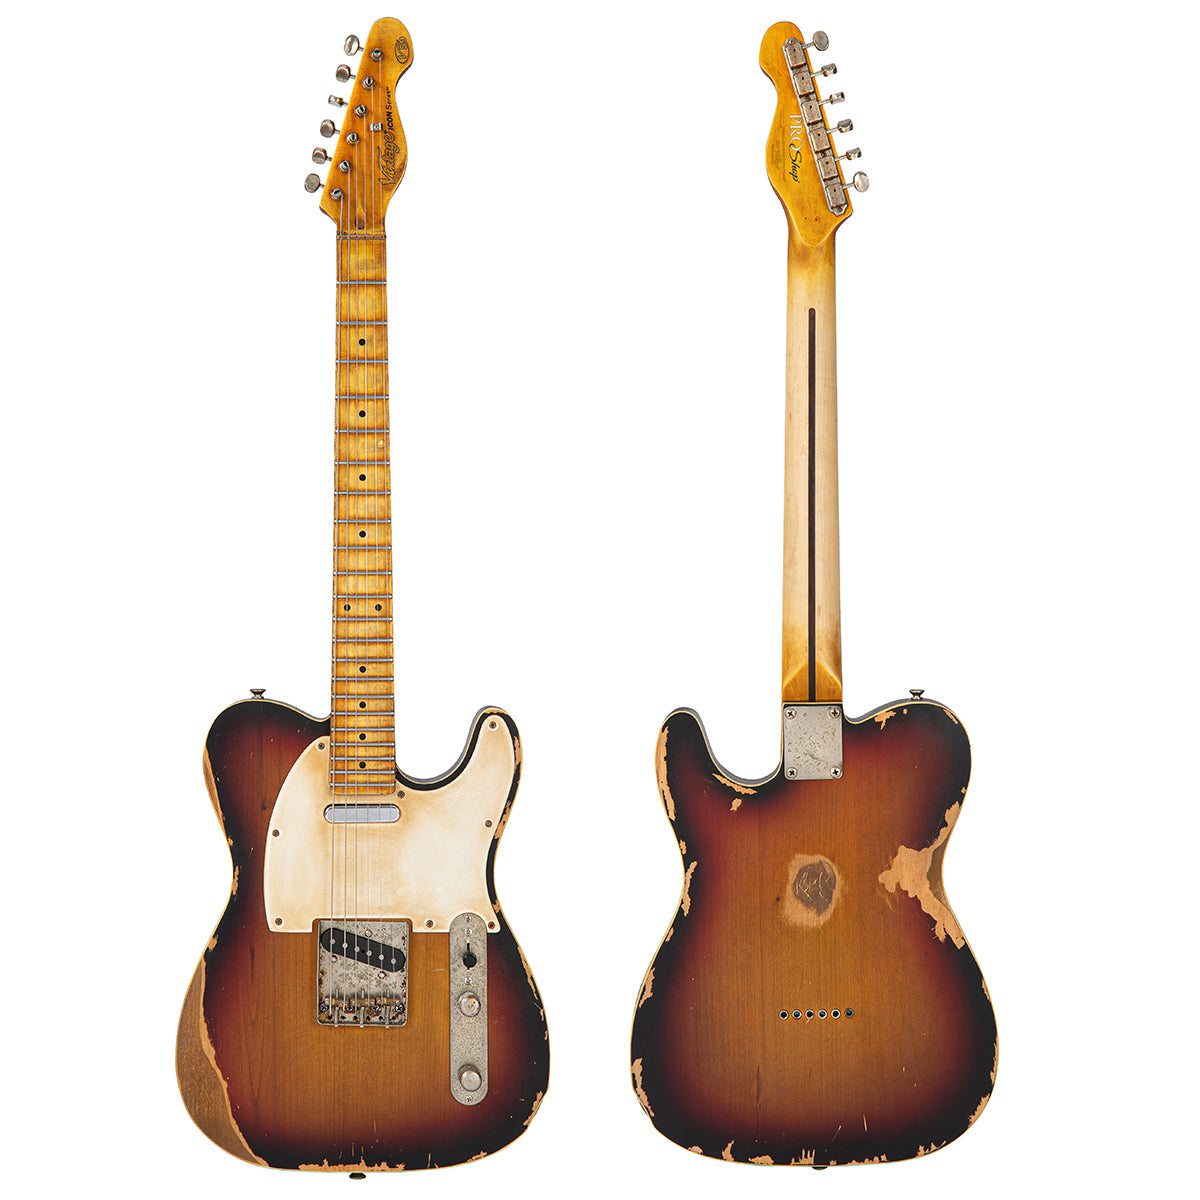 Vintage V59 ProShop LTD ~ Distressed Tobacco Sunburst (3 of 3), Electric Guitars for sale at Richards Guitars.